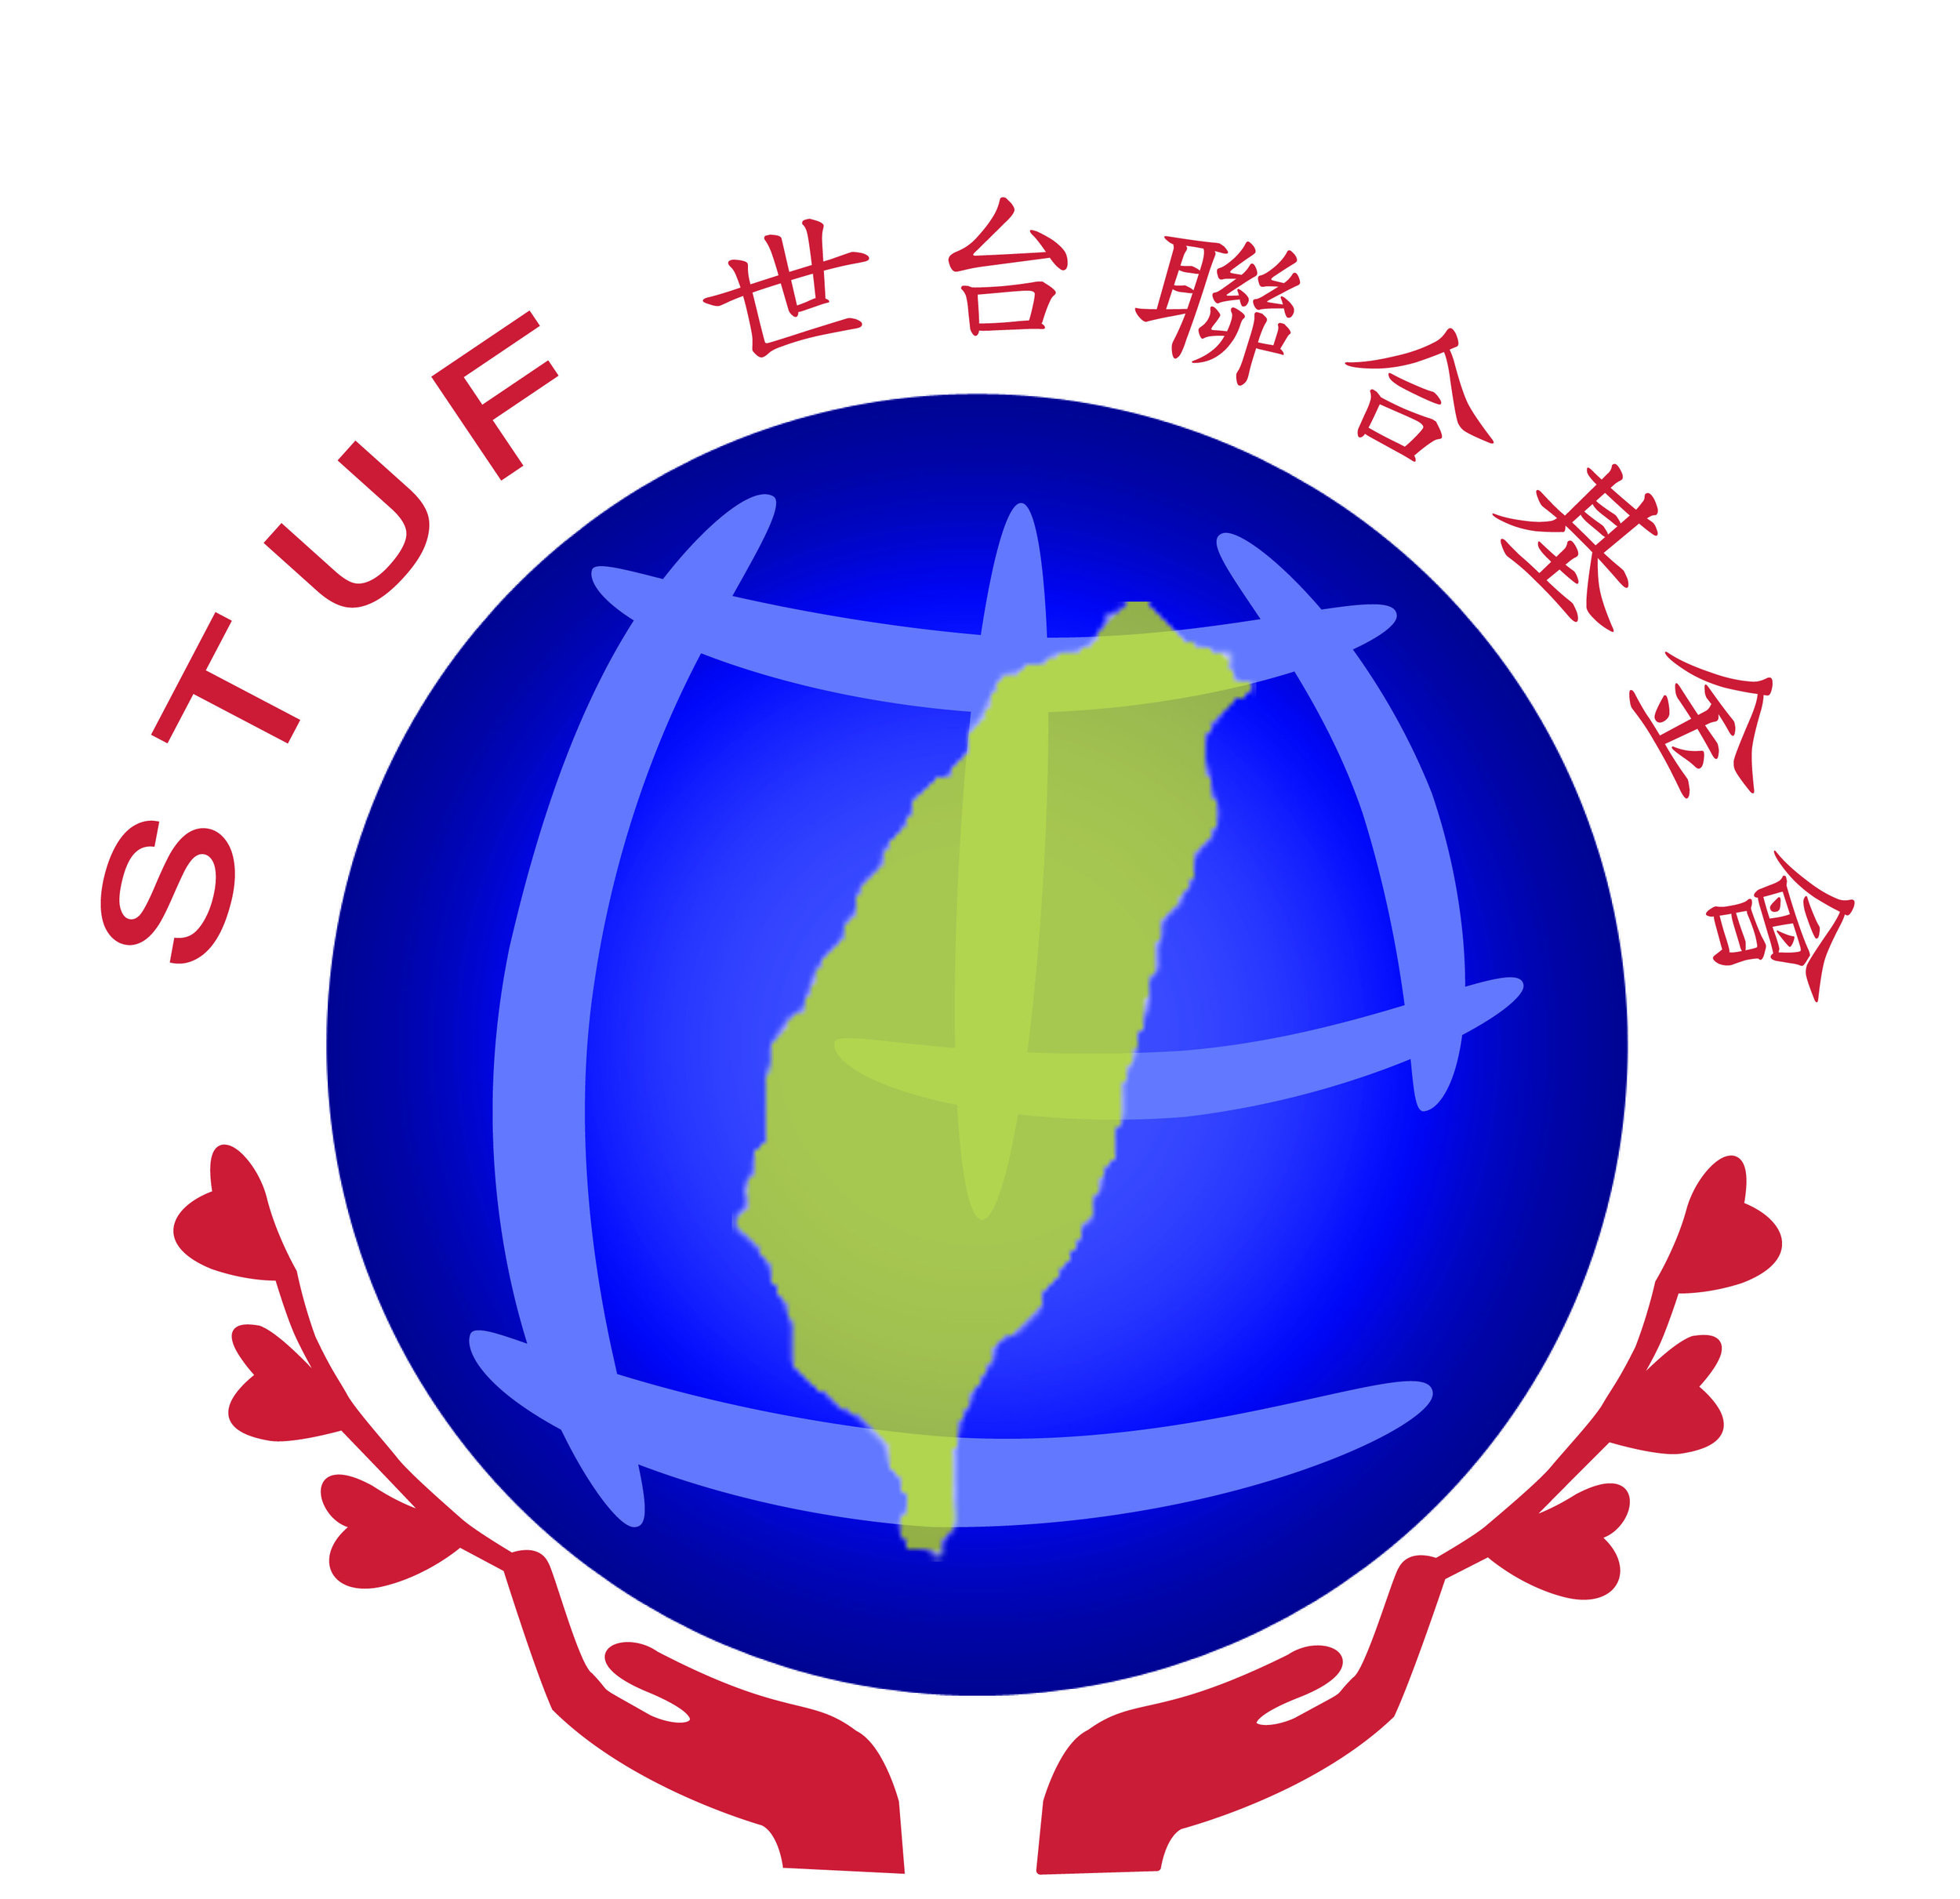 STUF logo large file.jpg